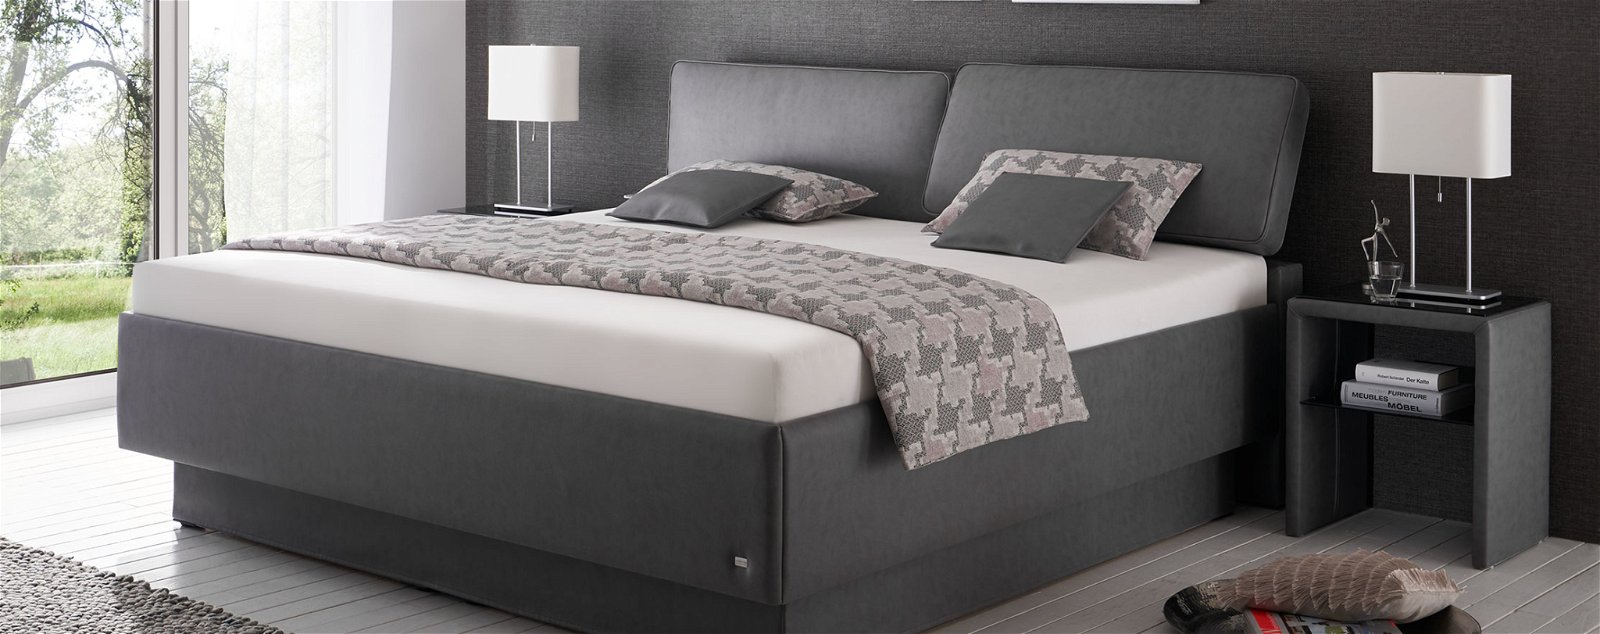 RUF Betten steht für einzigartige Lösungen und besten Schlafkomfort. Mehr im Wohn Schick Online Shop